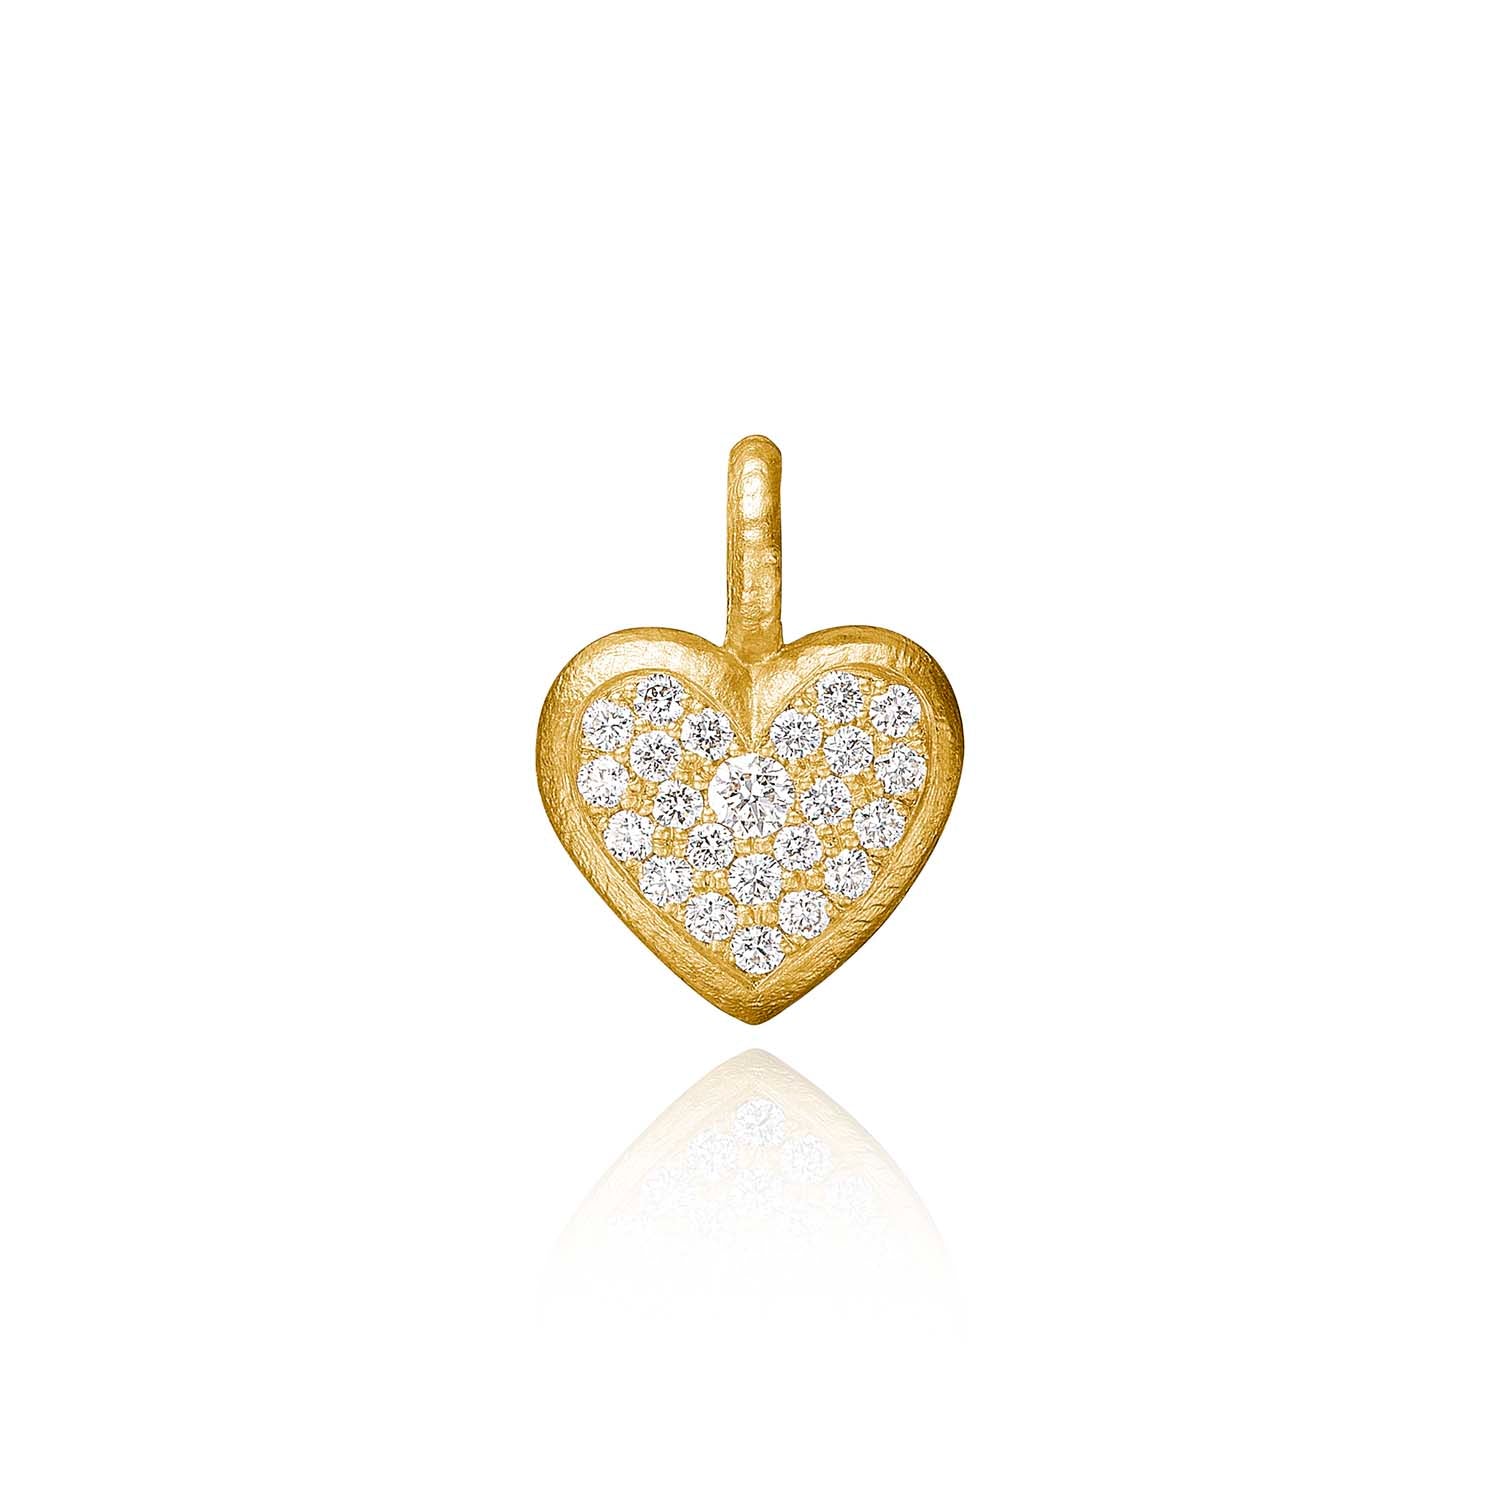 Billede af Dulong Fine Jewelry - Heart vedhæng m. diamanter 18 kt. guld 0,18 ct.